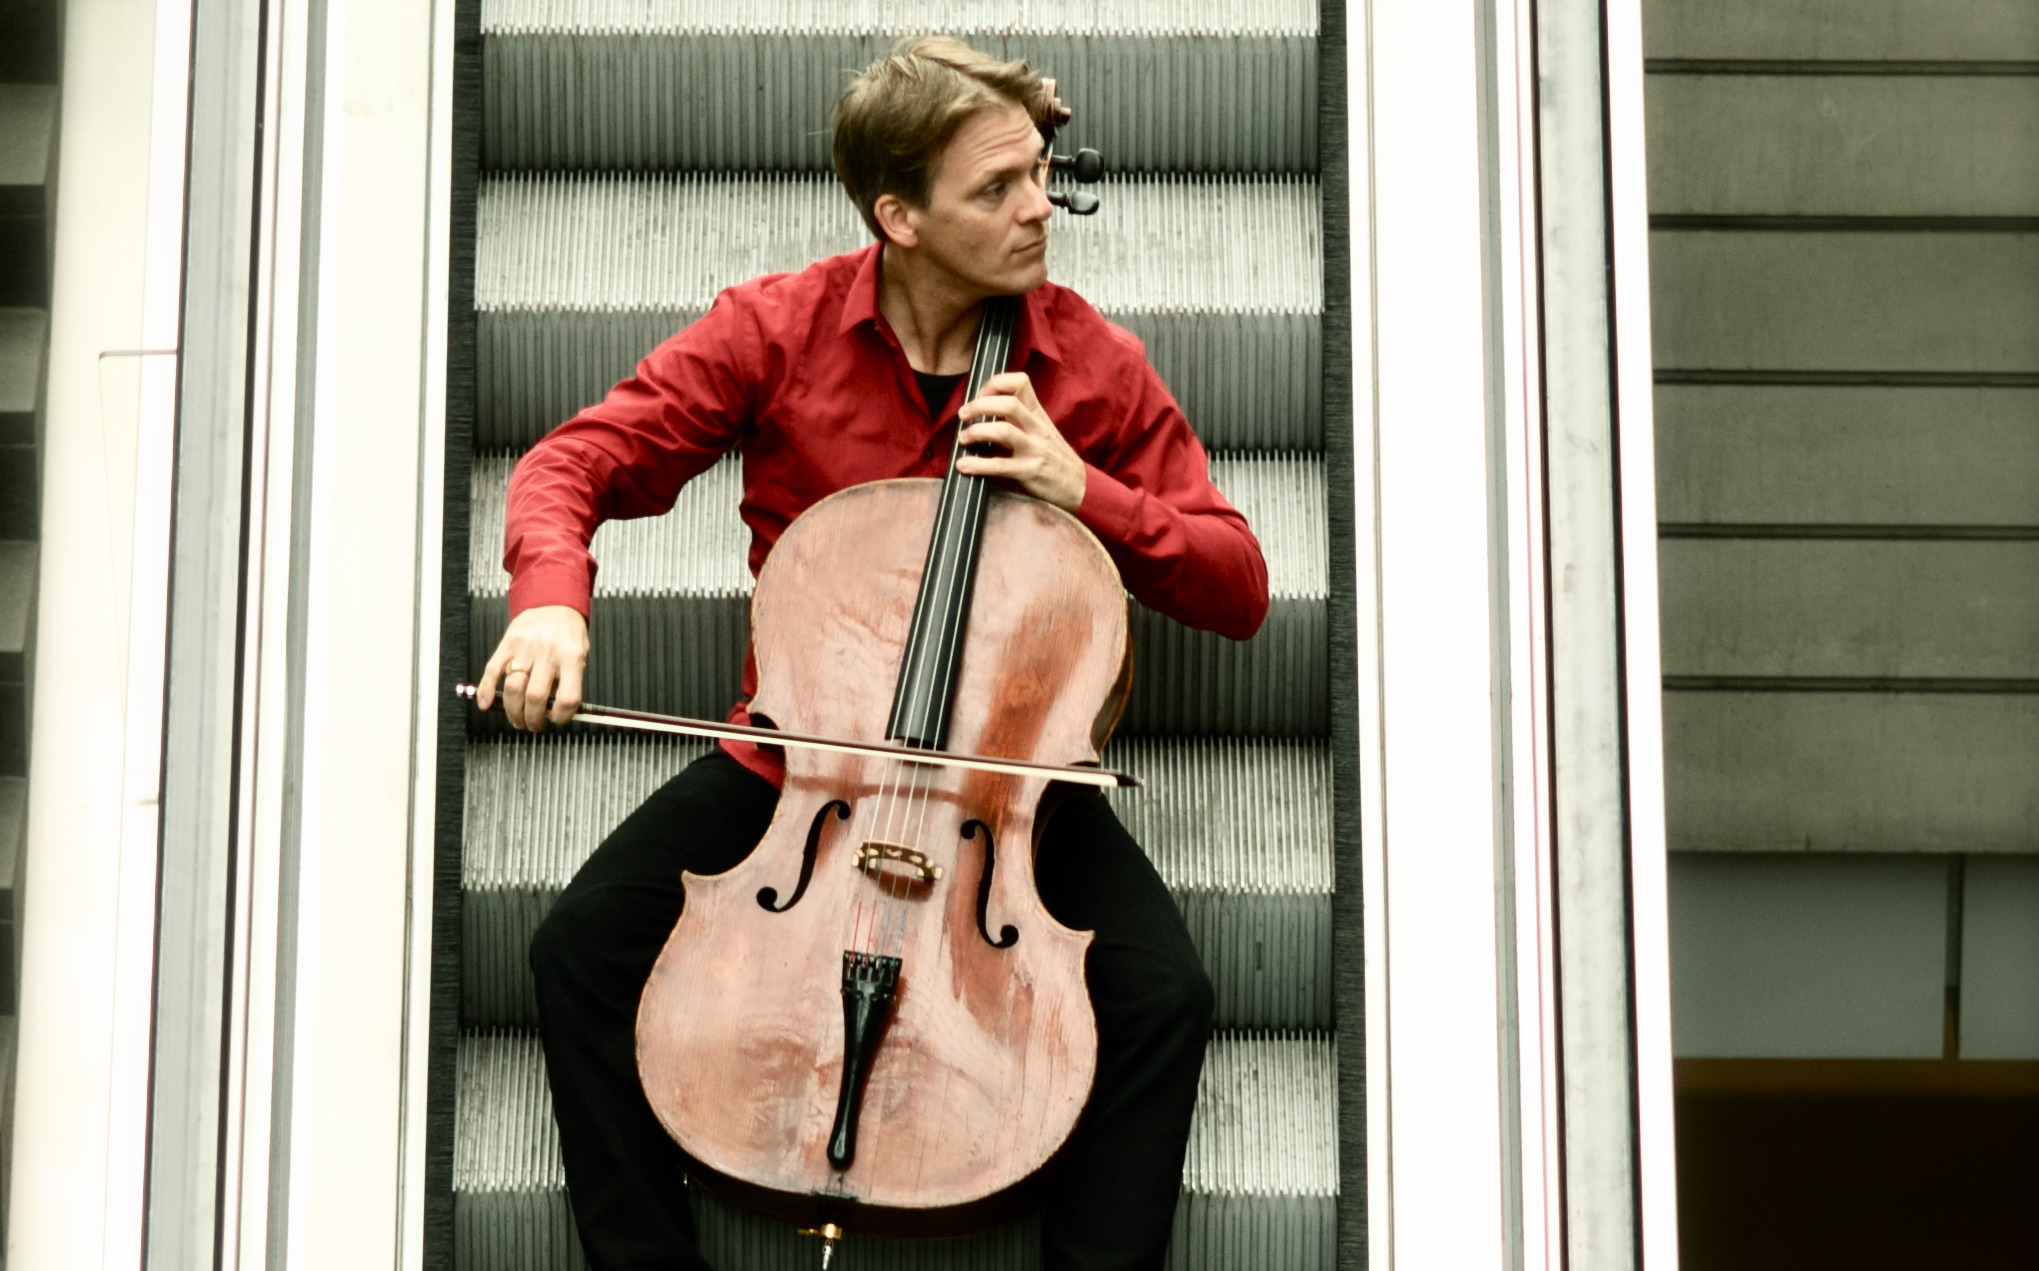 Cellist Alban Gerhardt startet zur Tour „Bach im Bahnhof 2013“